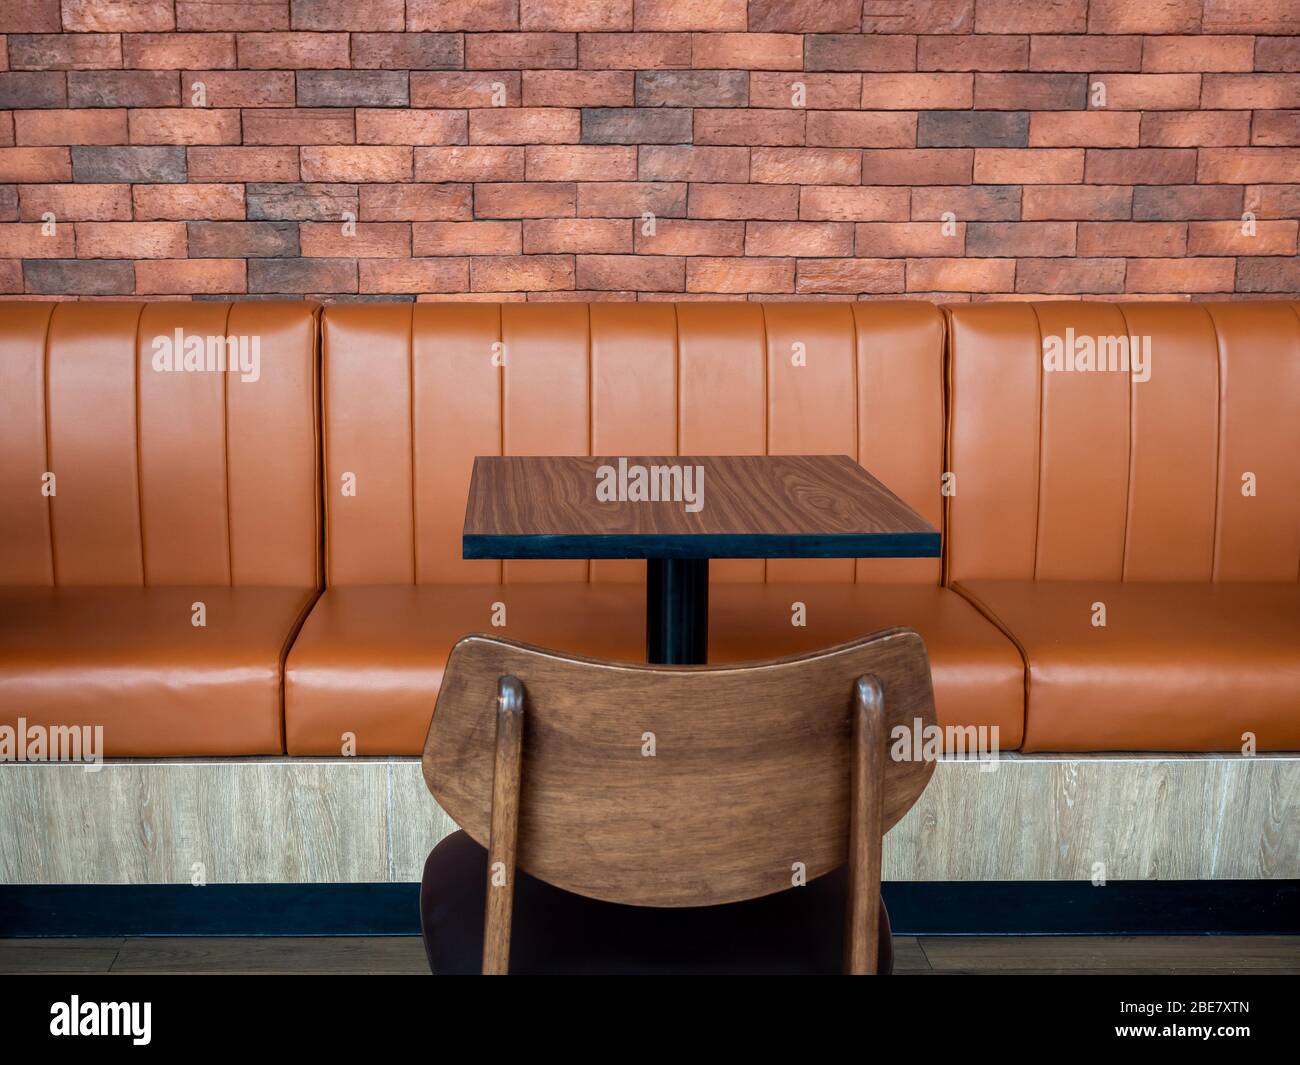 Decoración de muebles en estilo café retro. Mesa de bar vacía de madera y sofá  de cuero largo naranja y silla de madera sobre fondo de pared de ladrillo  Fotografía de stock -